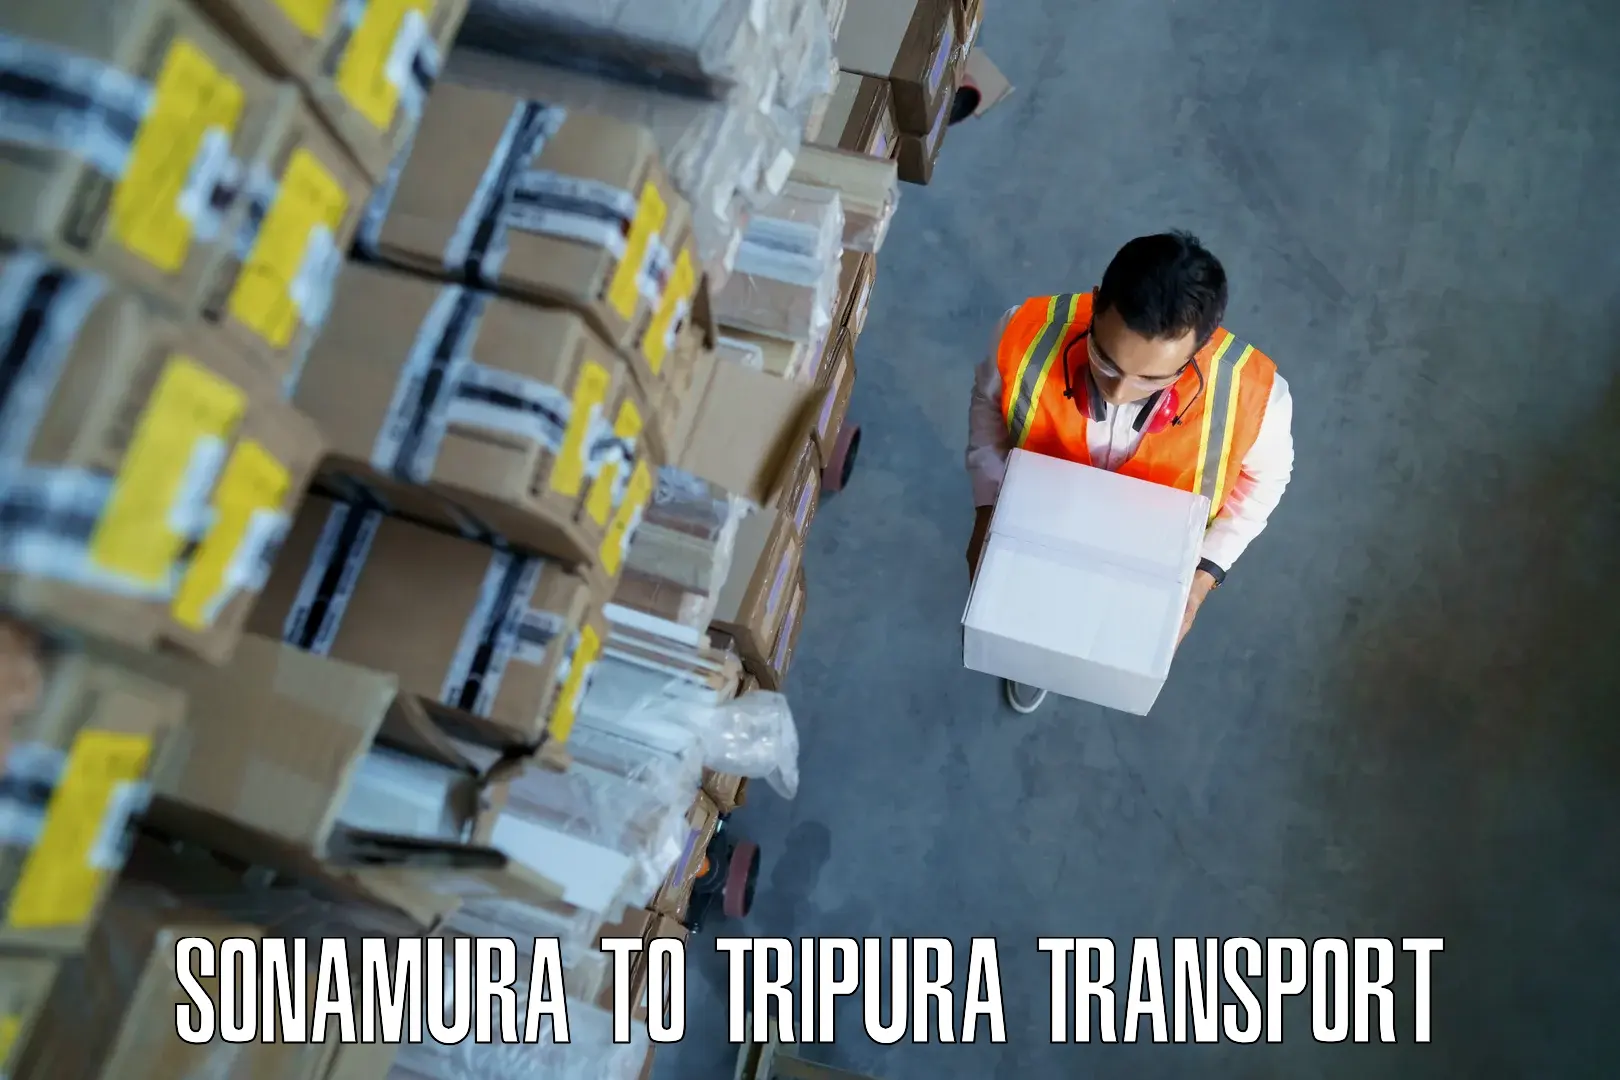 Road transport services Sonamura to Udaipur Tripura